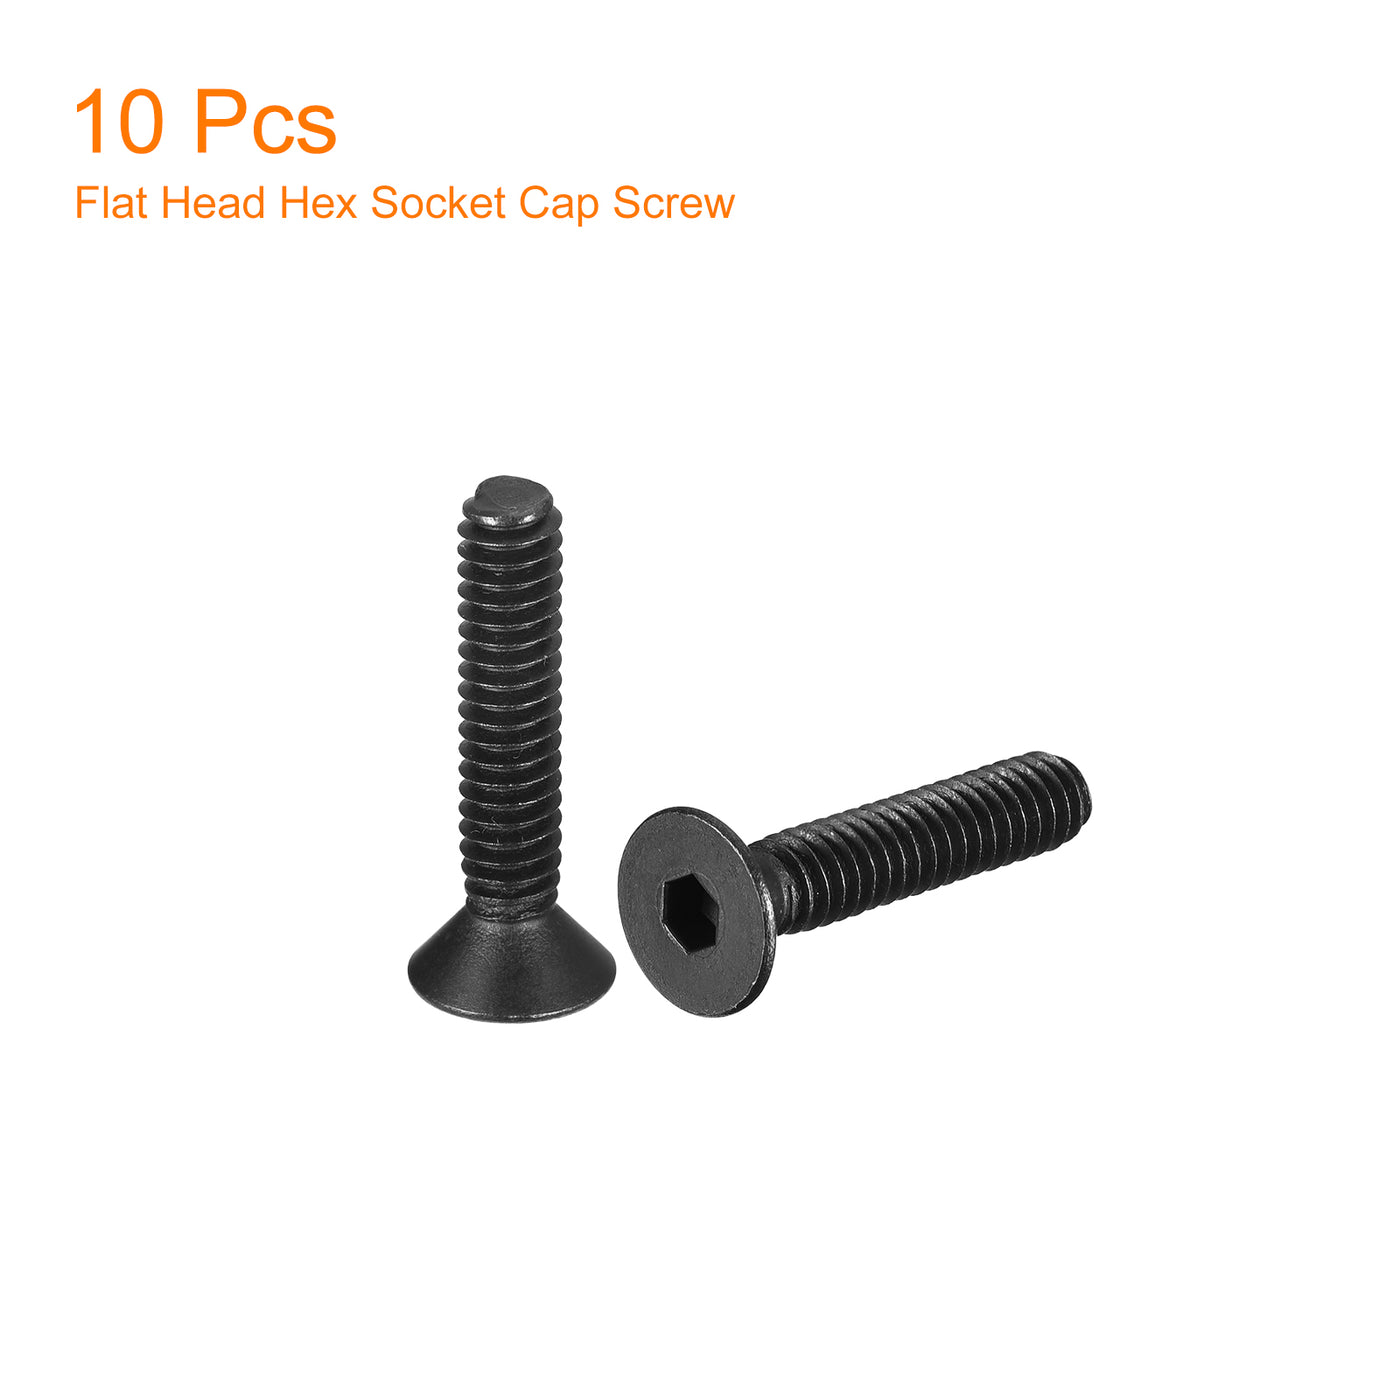 uxcell Uxcell #6-32x3/4" Flat Head Socket Cap Screws, 10.9 Grade Carbon, Black, 10pcs